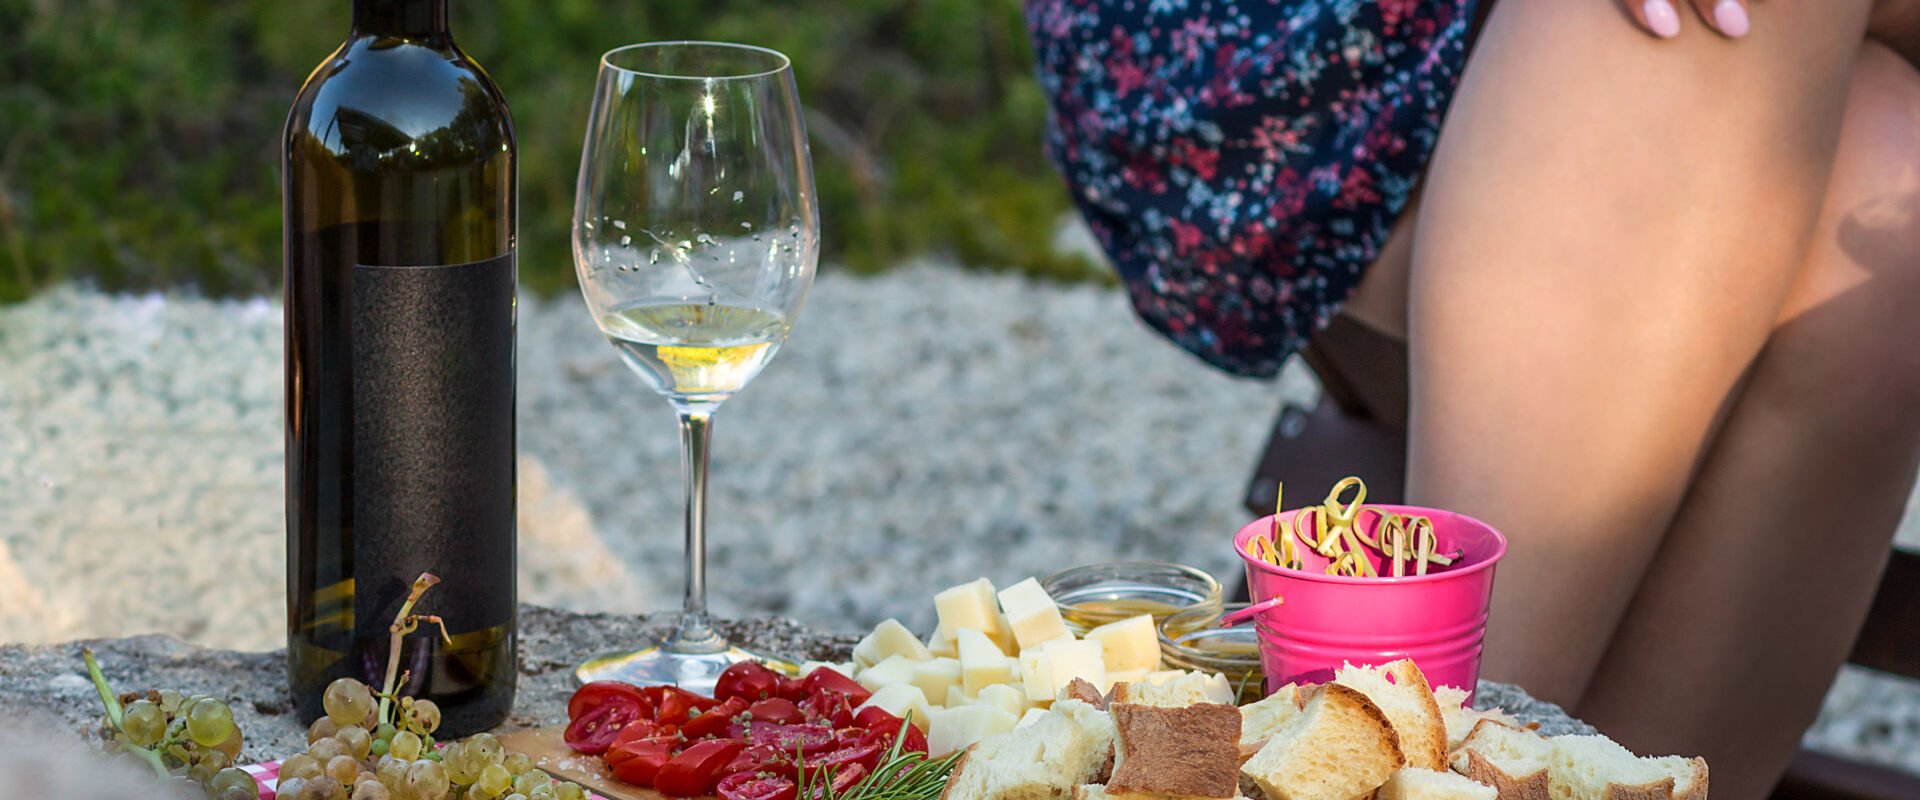 Greek wine tasting outdoor